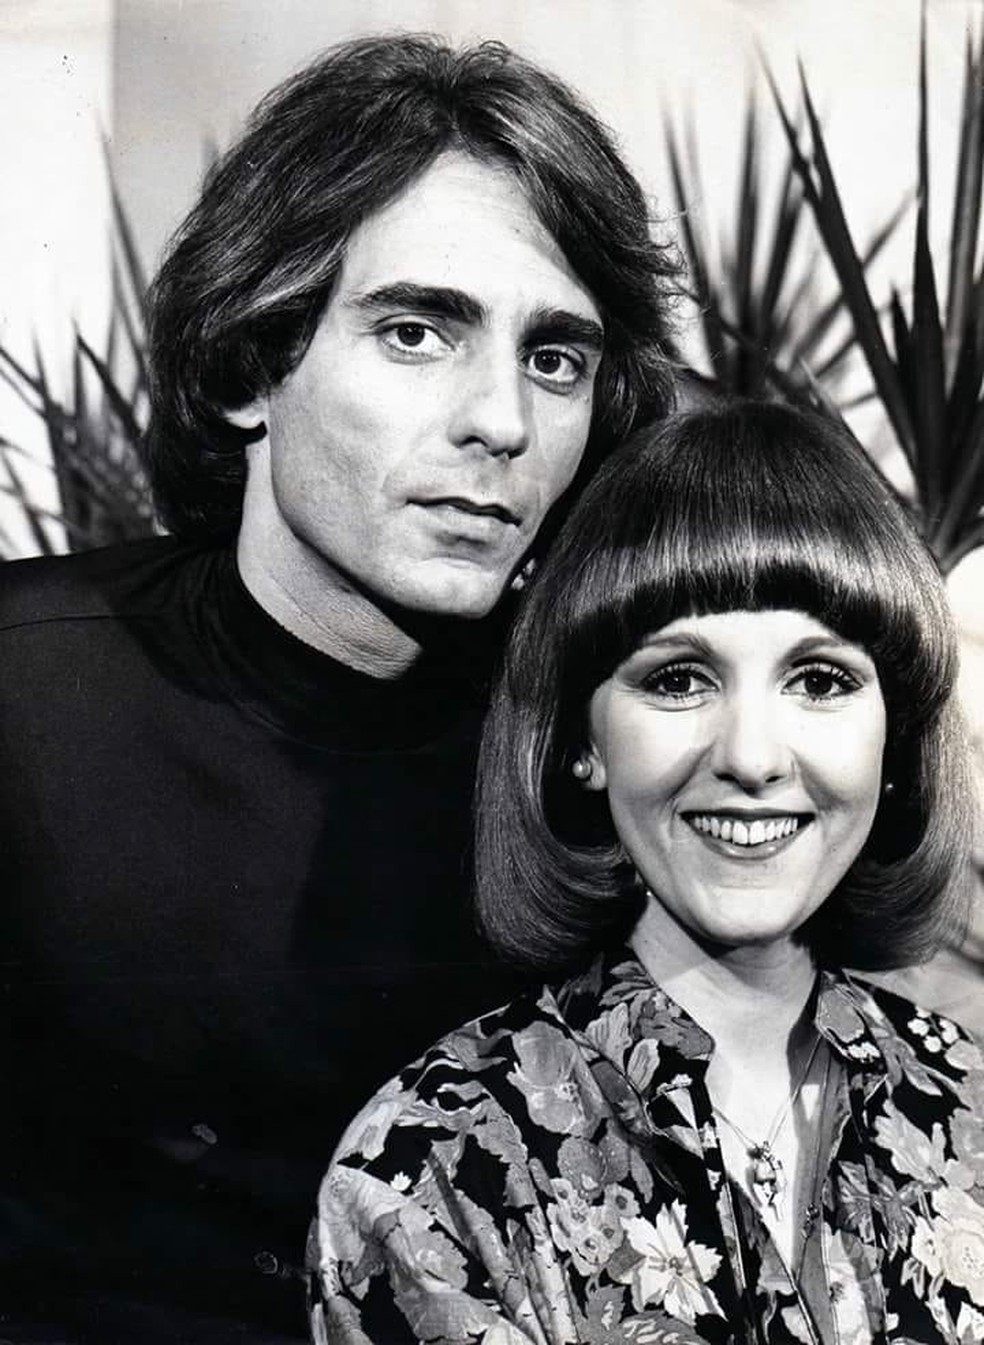 João Paulo Adour interpretava 'Ivan' e Patrícia Bueno era 'Gisa' na época da gravação da novela 'Dona Xepa', da Rede Globo, em 1977 (Foto: Arquivo pessoal / Patrícia Bueno)